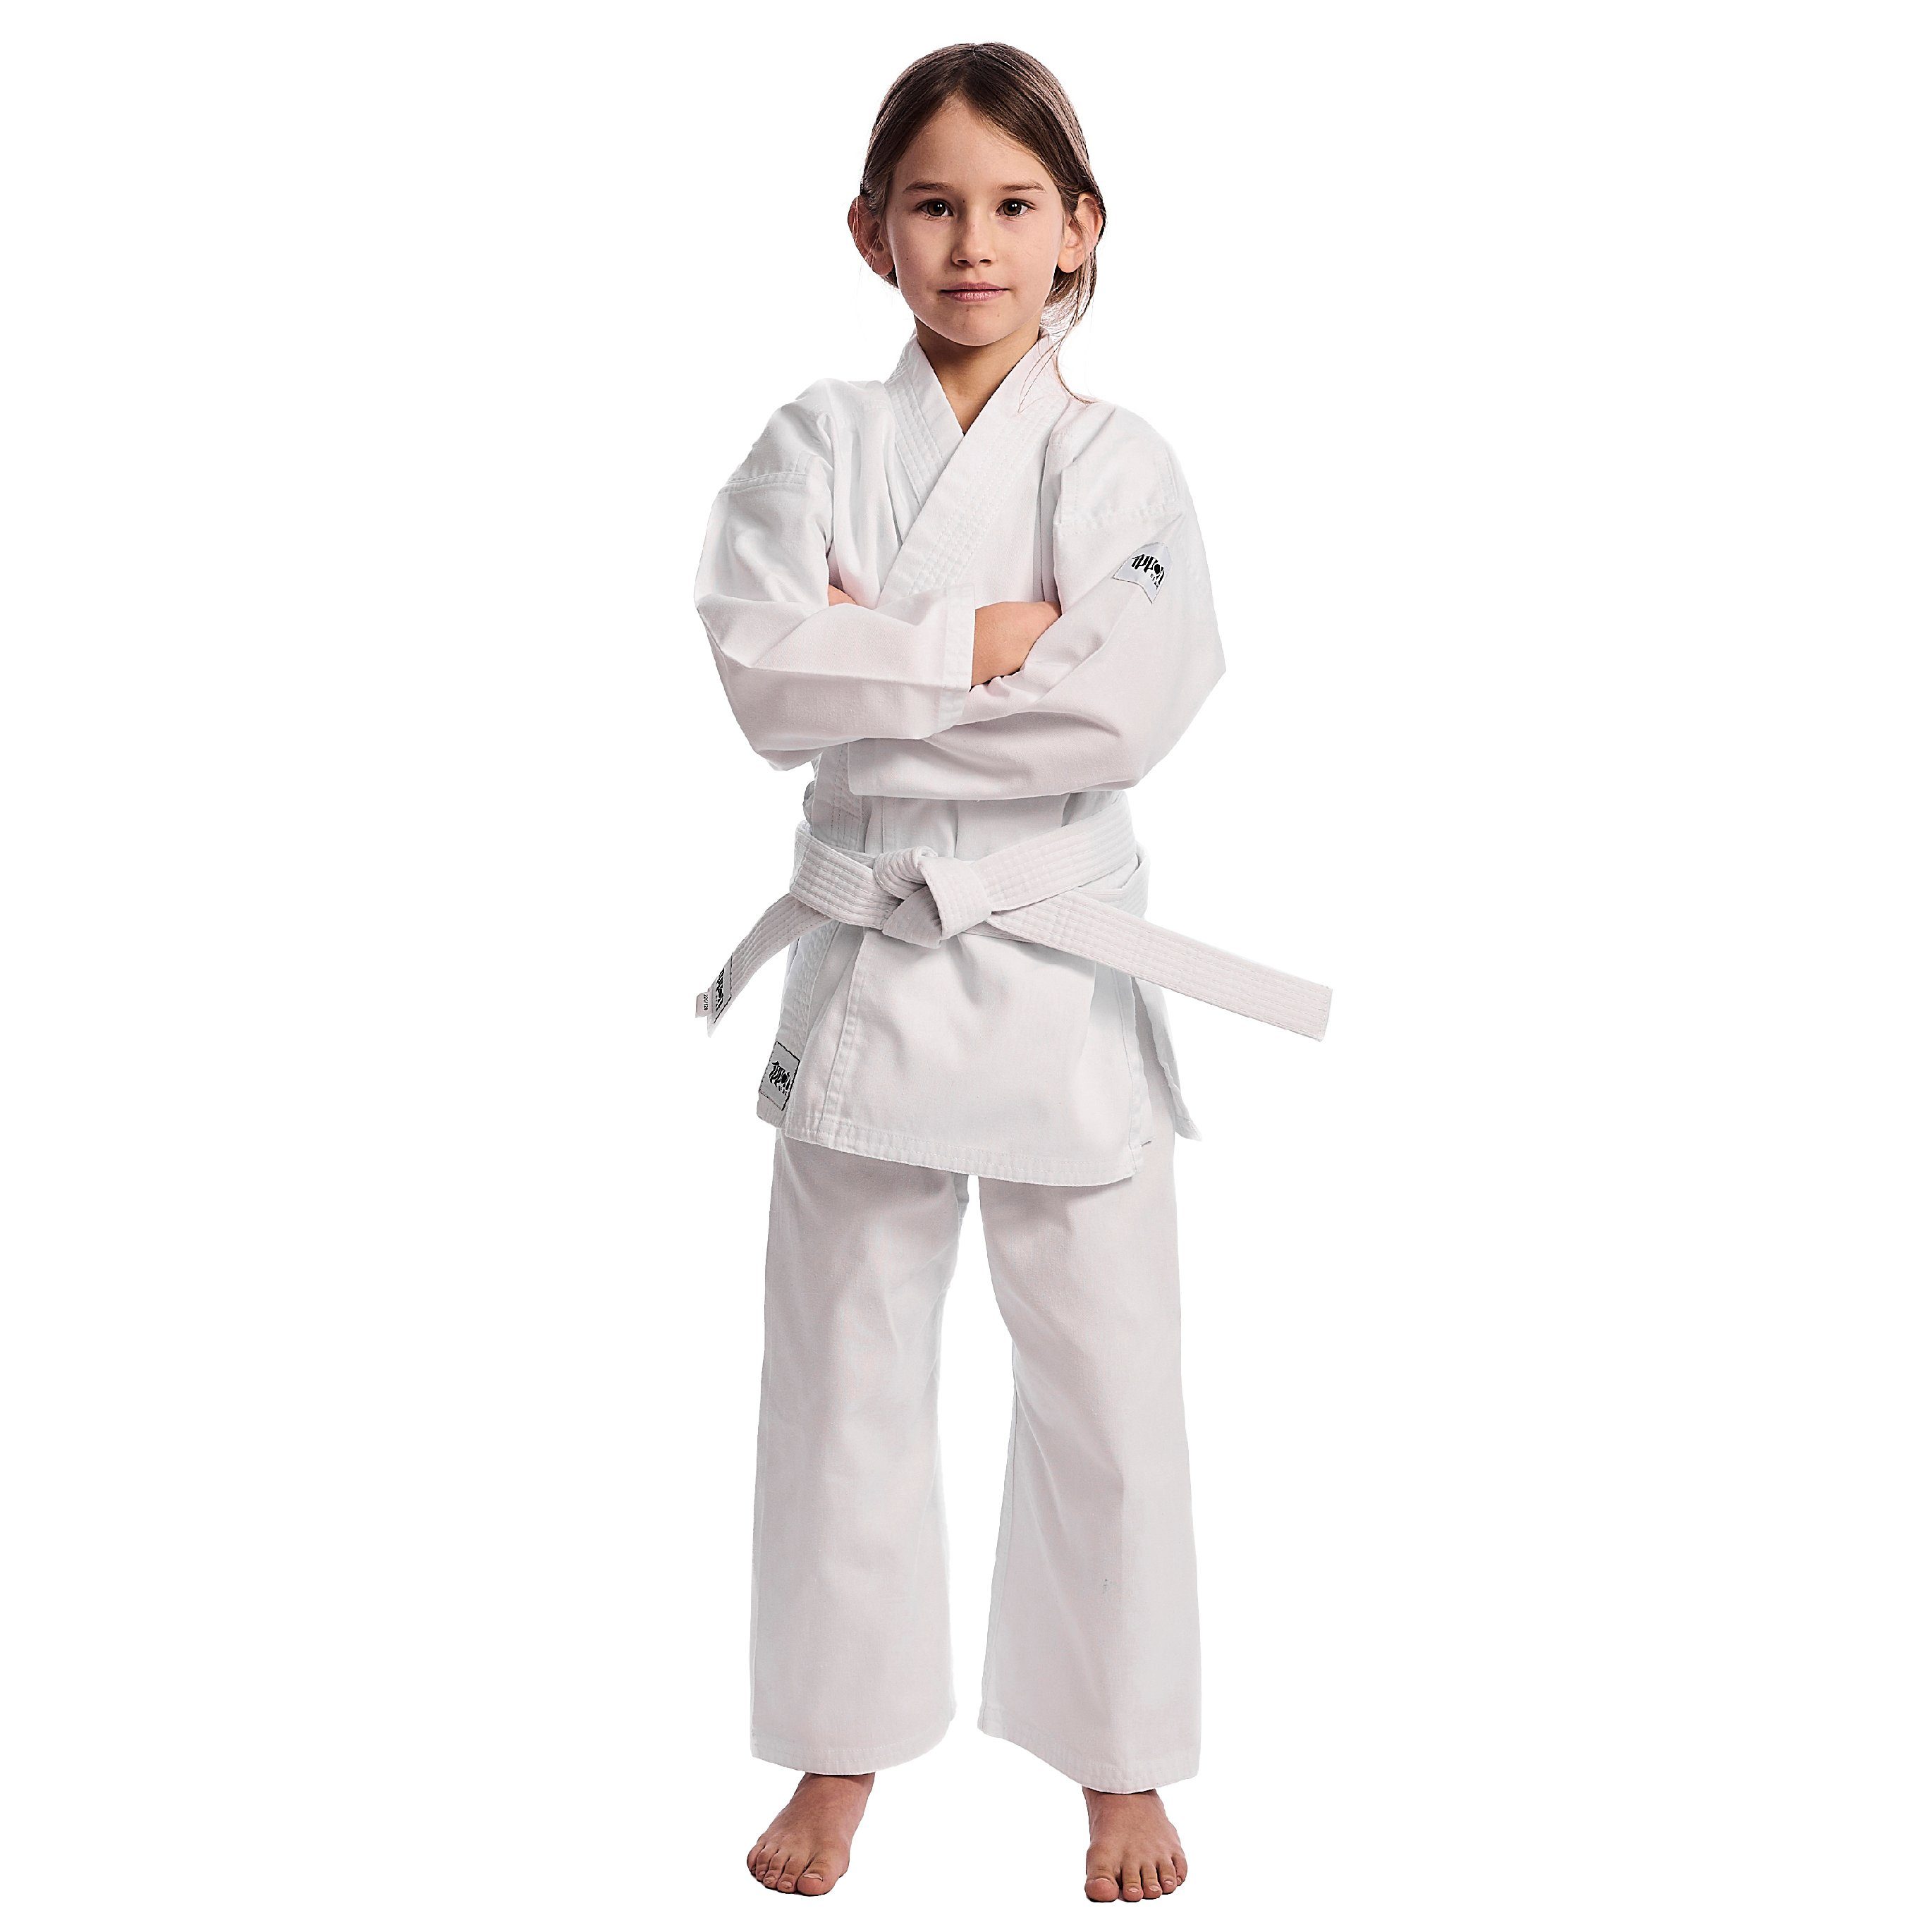 Kinder Kindersportbekleidung IPPON GEAR Karateanzug Club Karate GI Set Einsteiger Karateanzug Kinder Anzug inkl. Gürtel, [Größe 